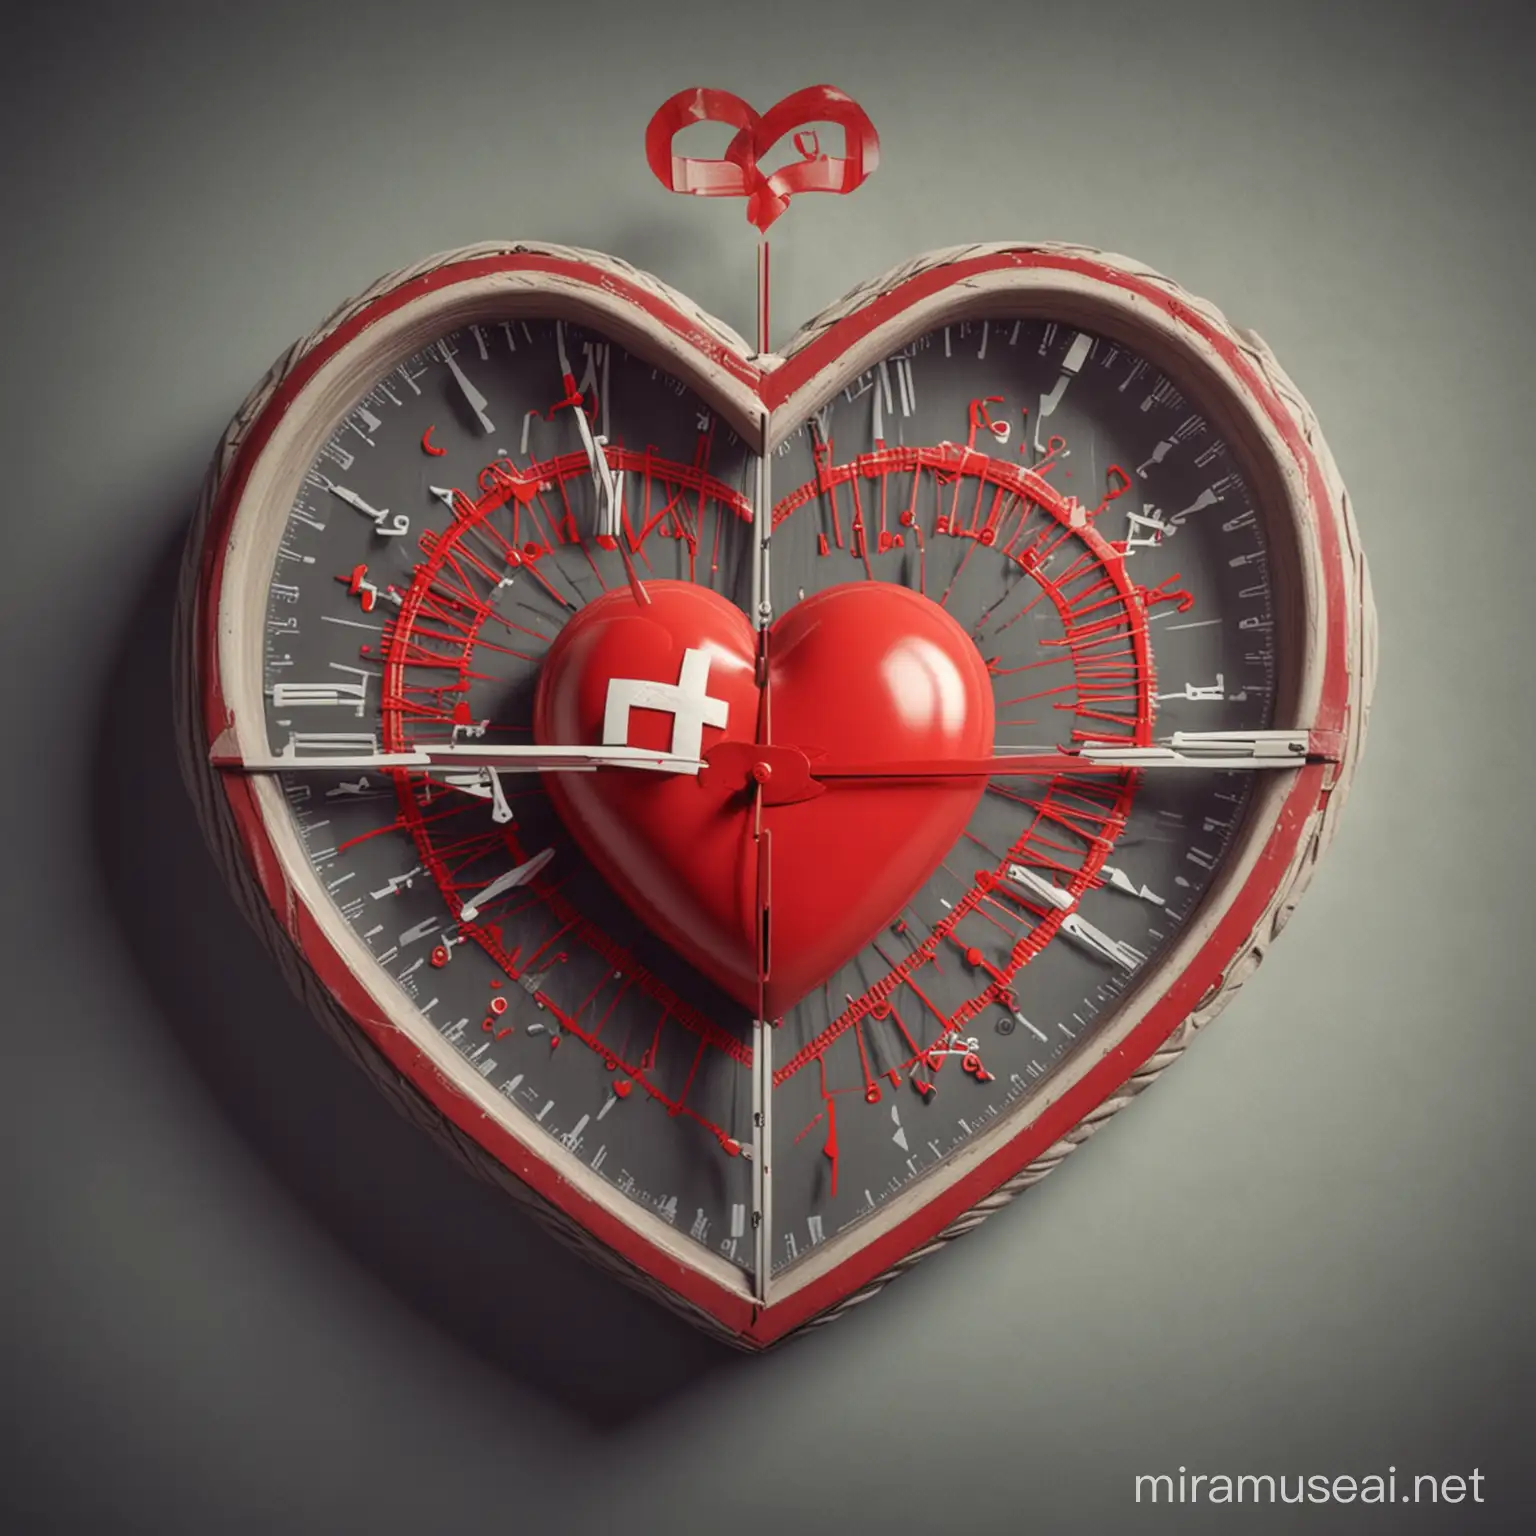 有一个显示分秒时钟，有一个红心和心电波形重合，有一个红十字，寓意争分夺秒抢救生命